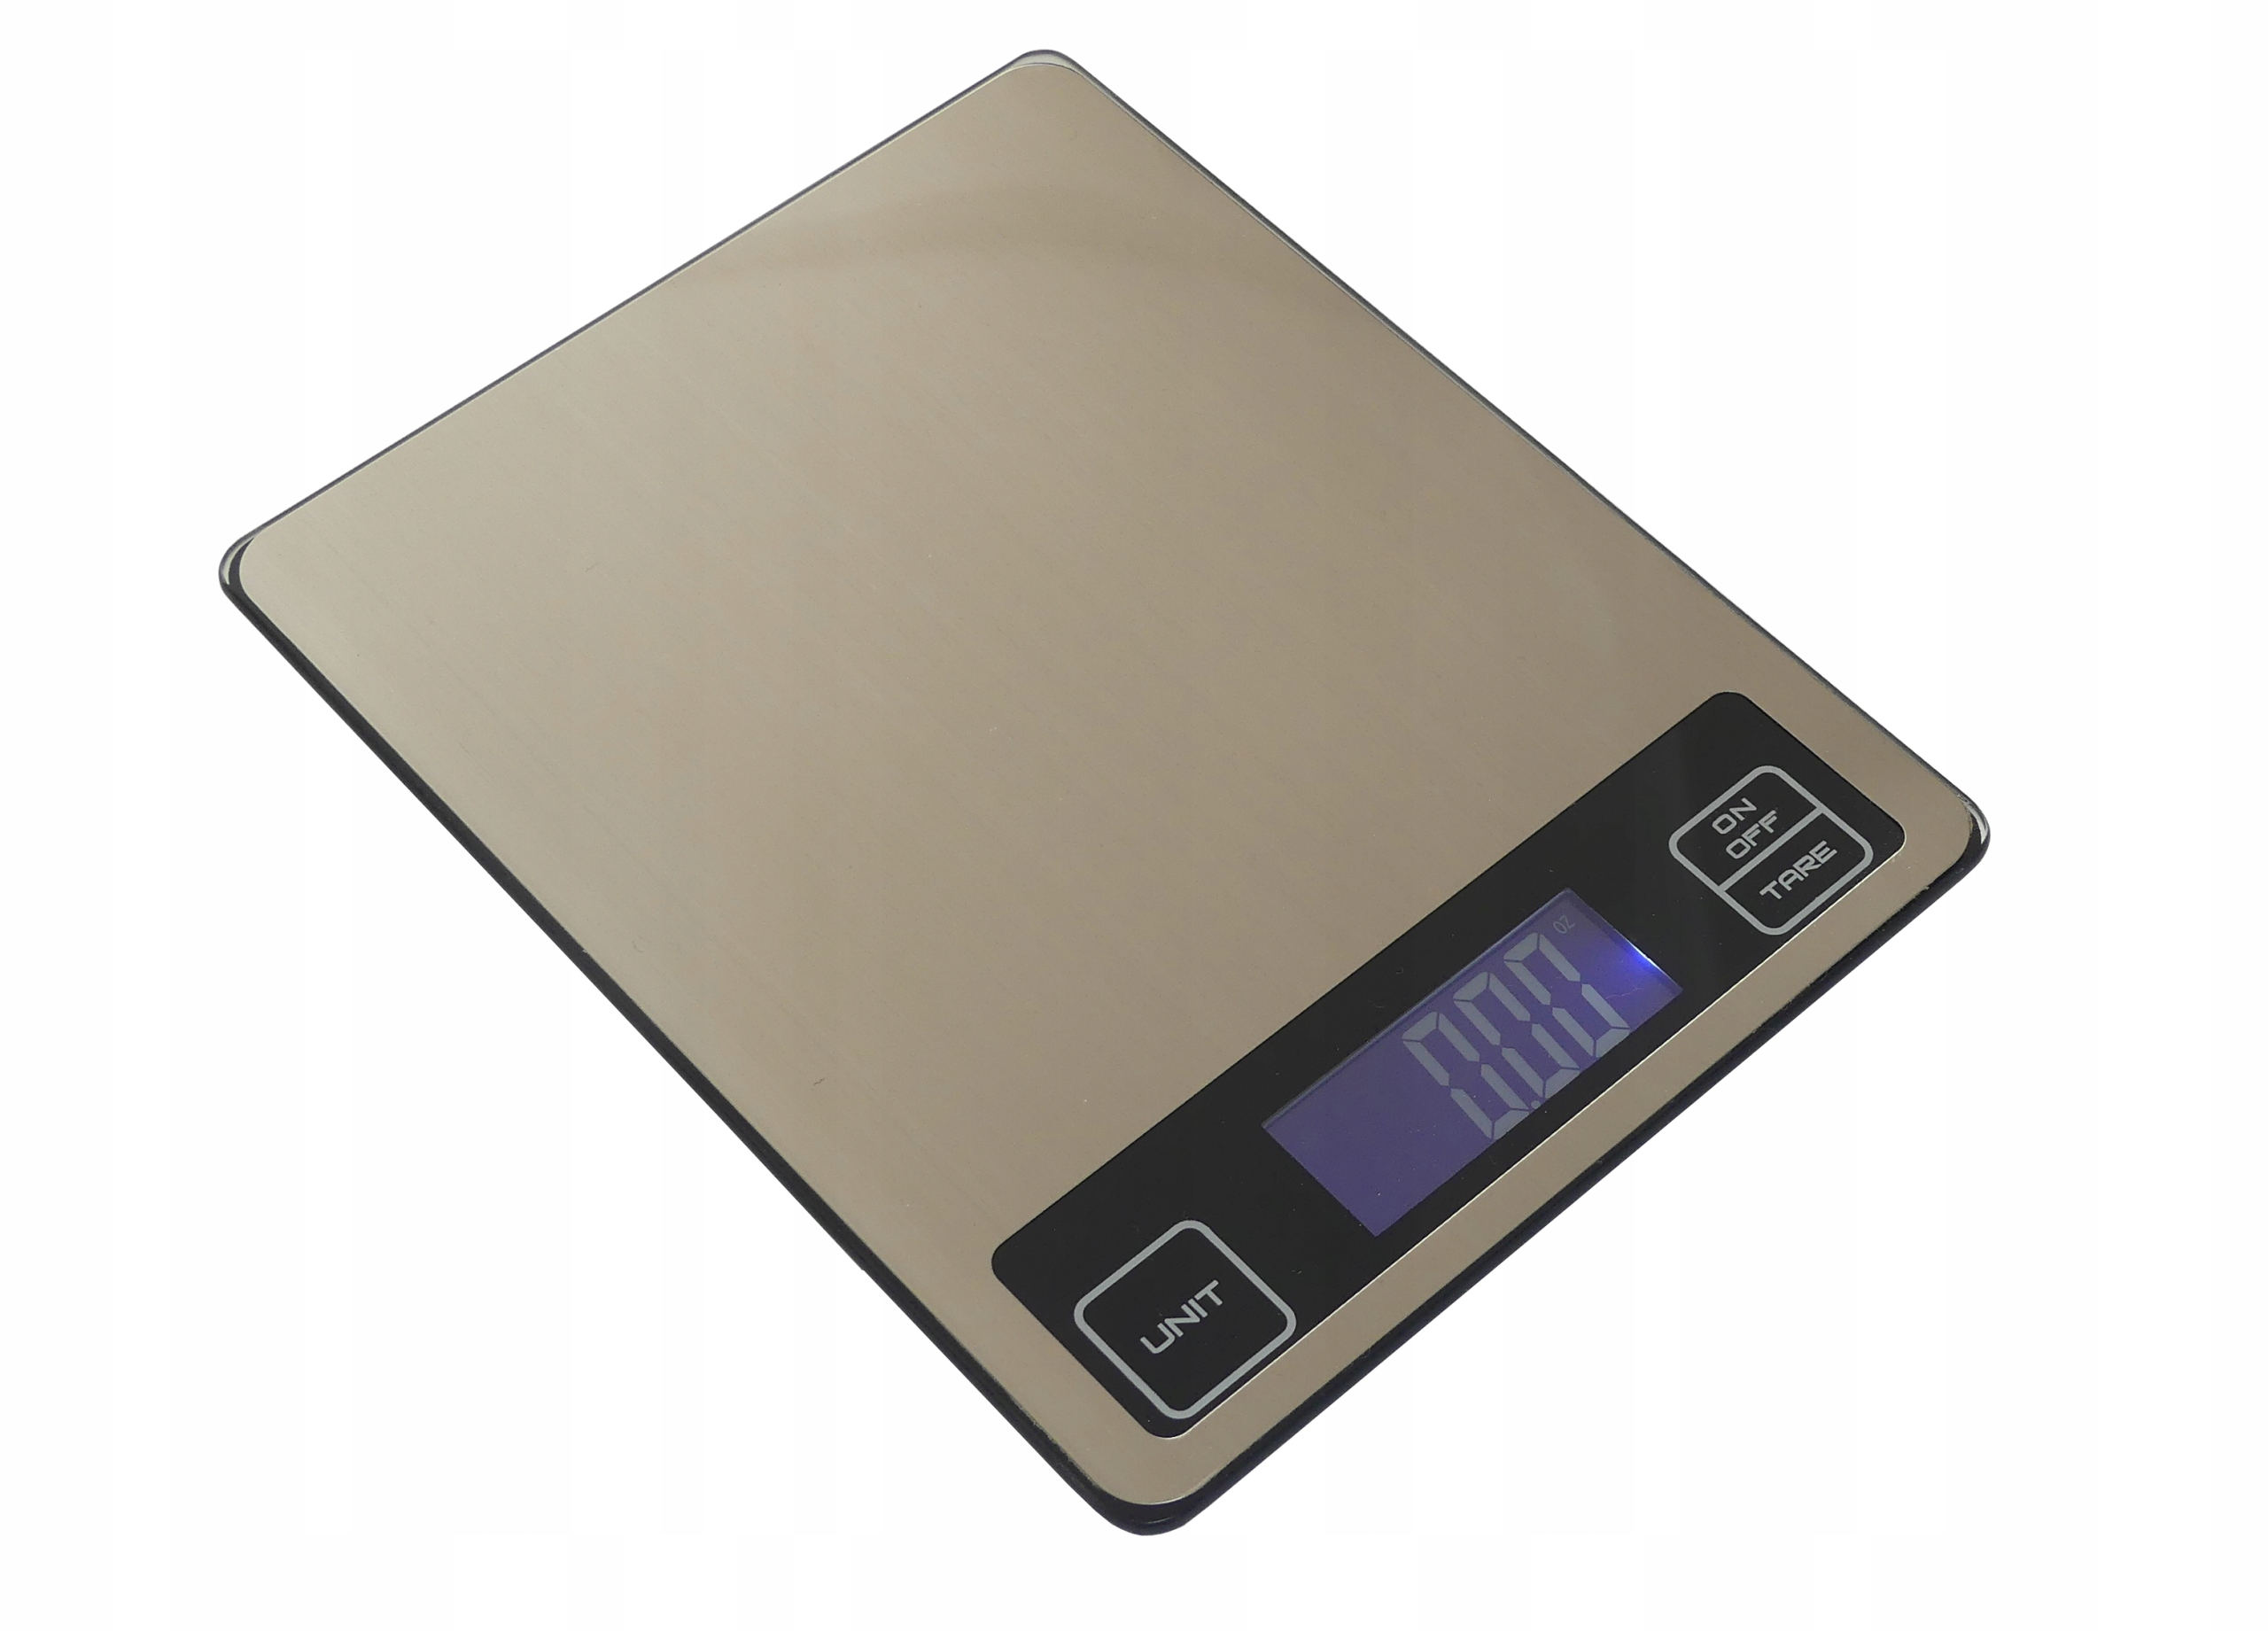 Вес для кухонных букв 8 кг 1 г сенсорный. с небольшим, но код производителя SF-660